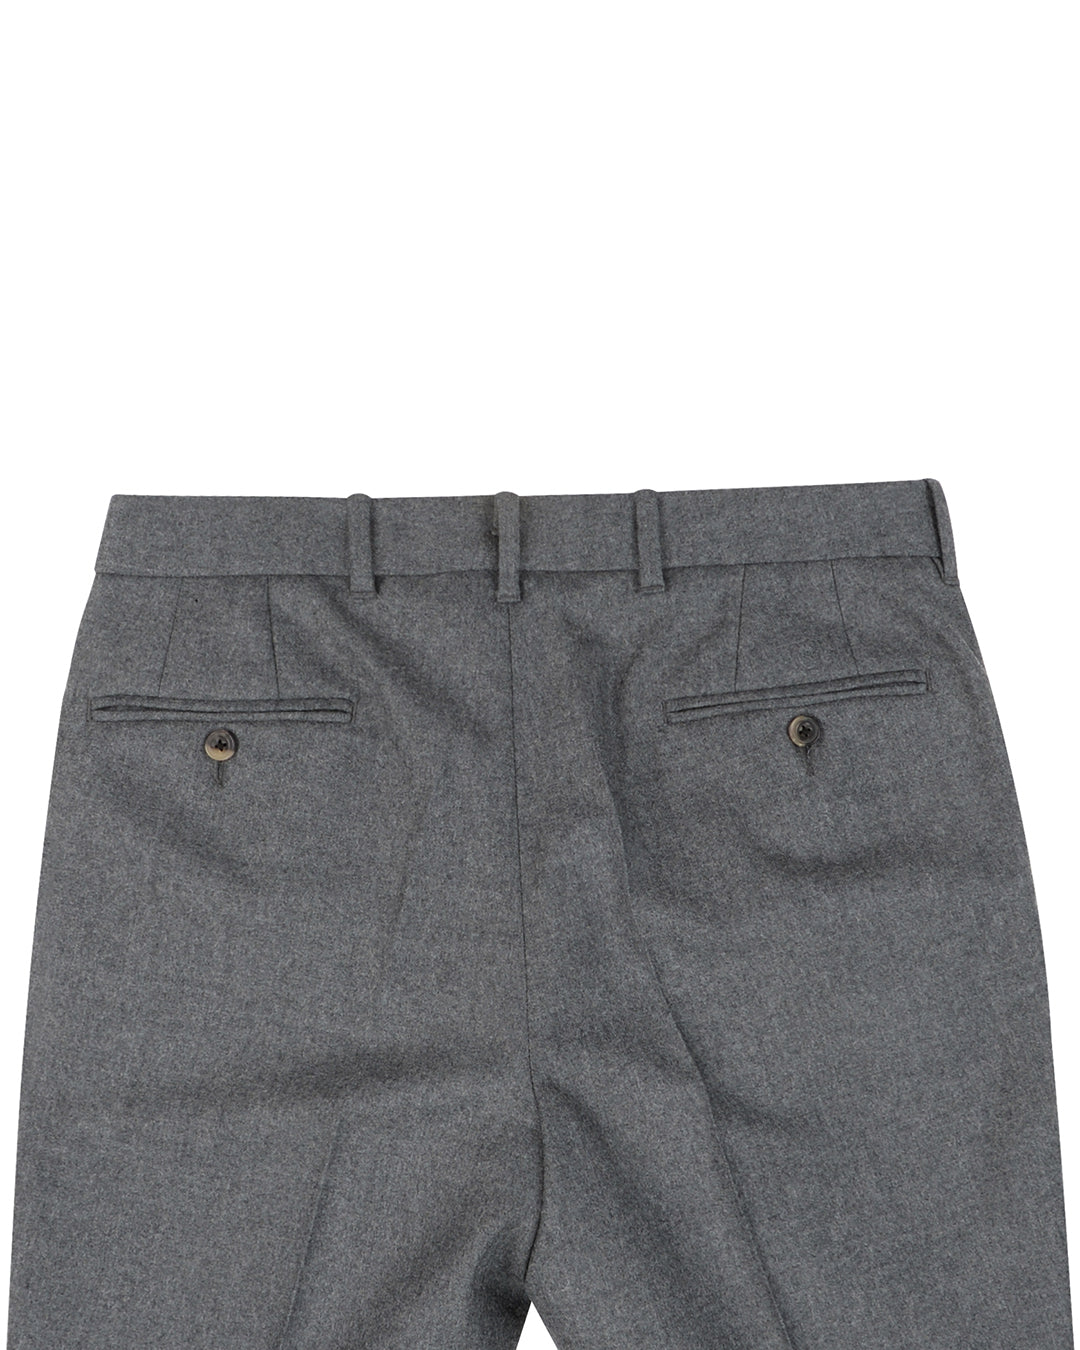 Minnis Flannel: Grey Twill Pants